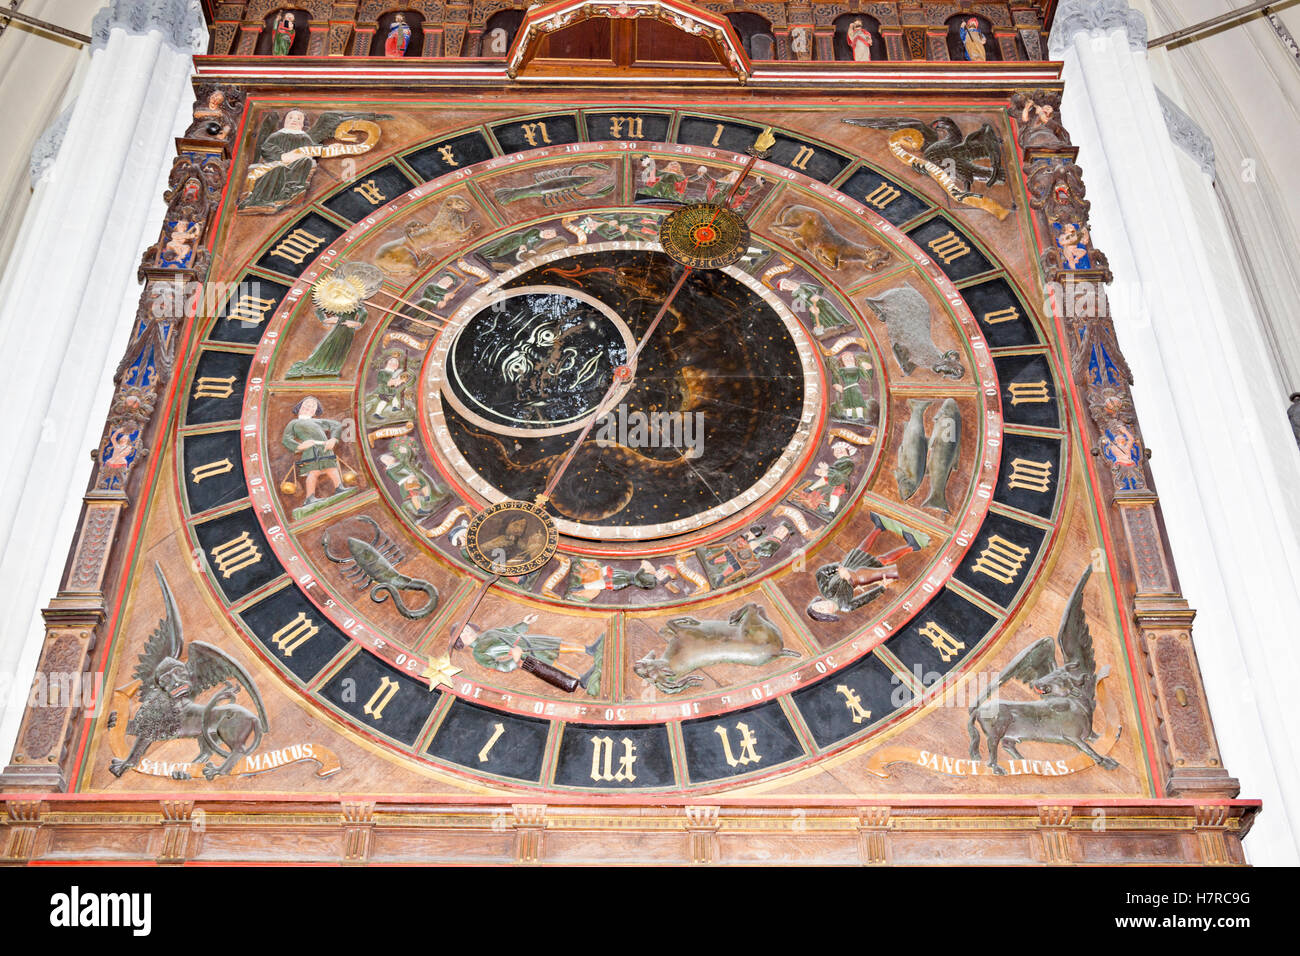 Astronomische Uhr, Str. Marys Kirche, Marienkirche, Rostock,  Mecklenburg-Vorpommern, Deutschland Stockfotografie - Alamy